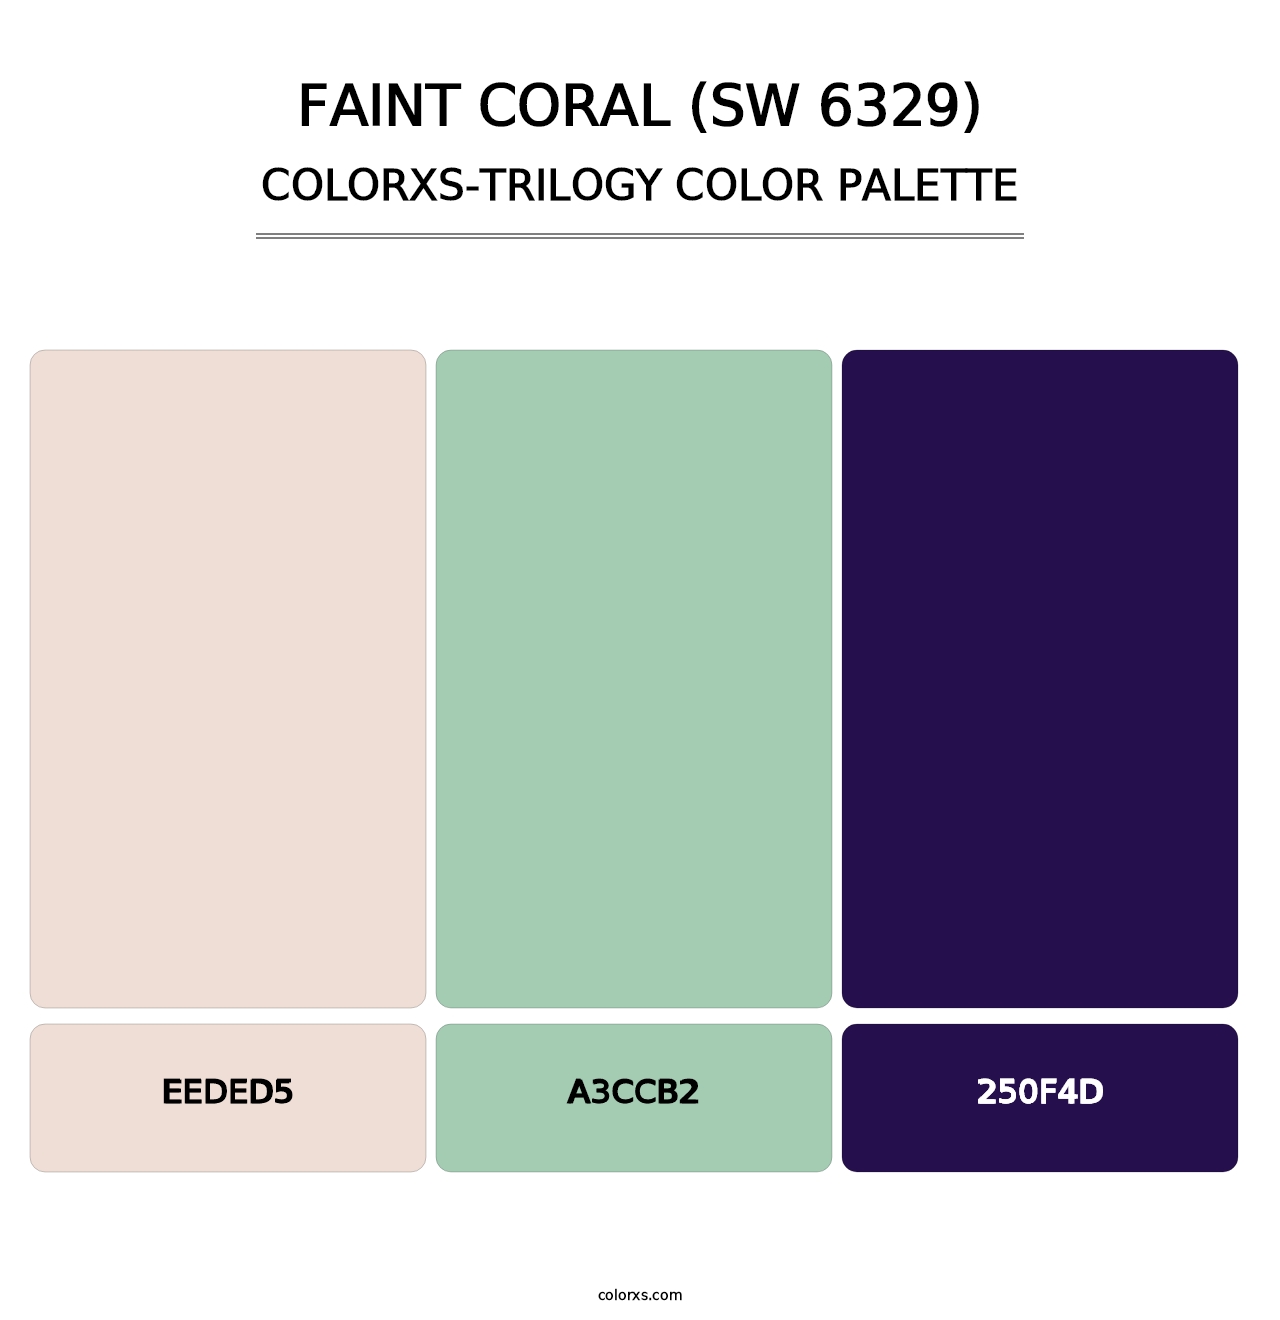 Faint Coral (SW 6329) - Colorxs Trilogy Palette